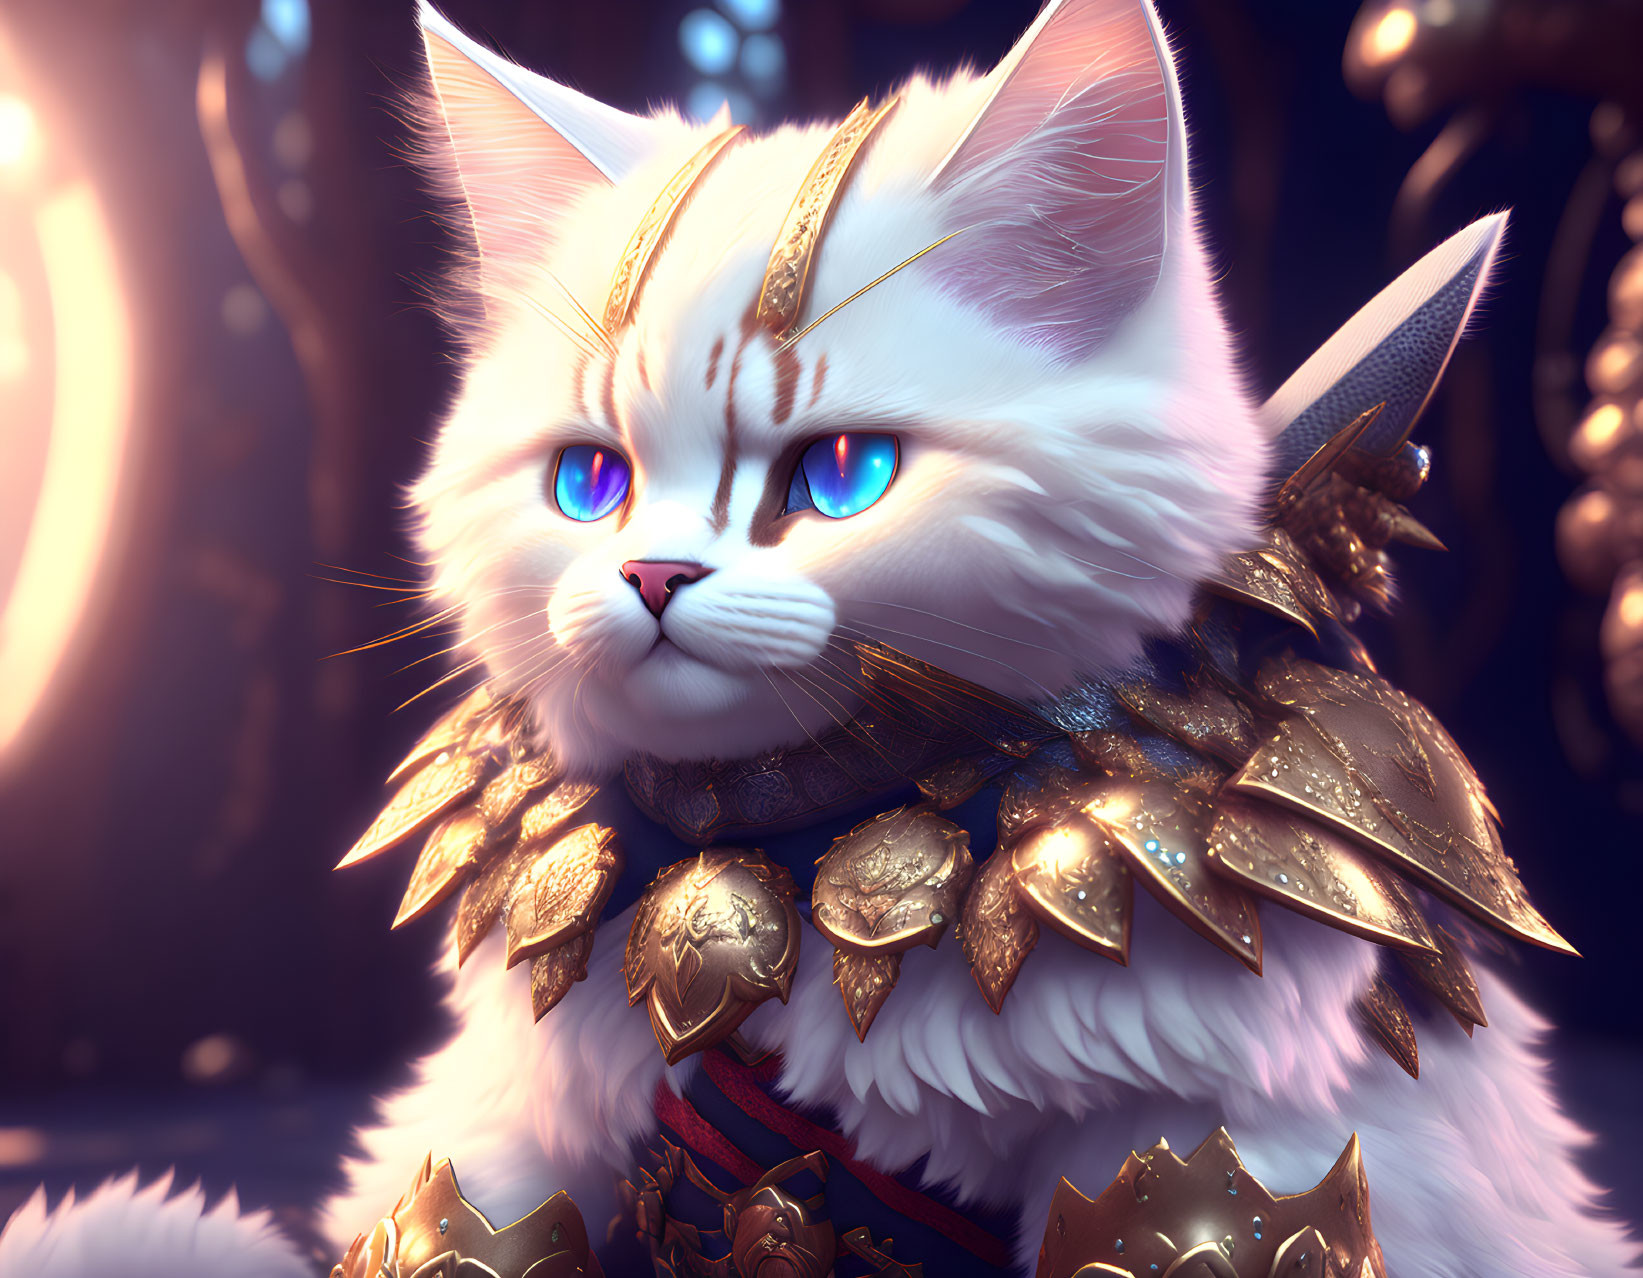 Super cute fluffy cat warrior in armor